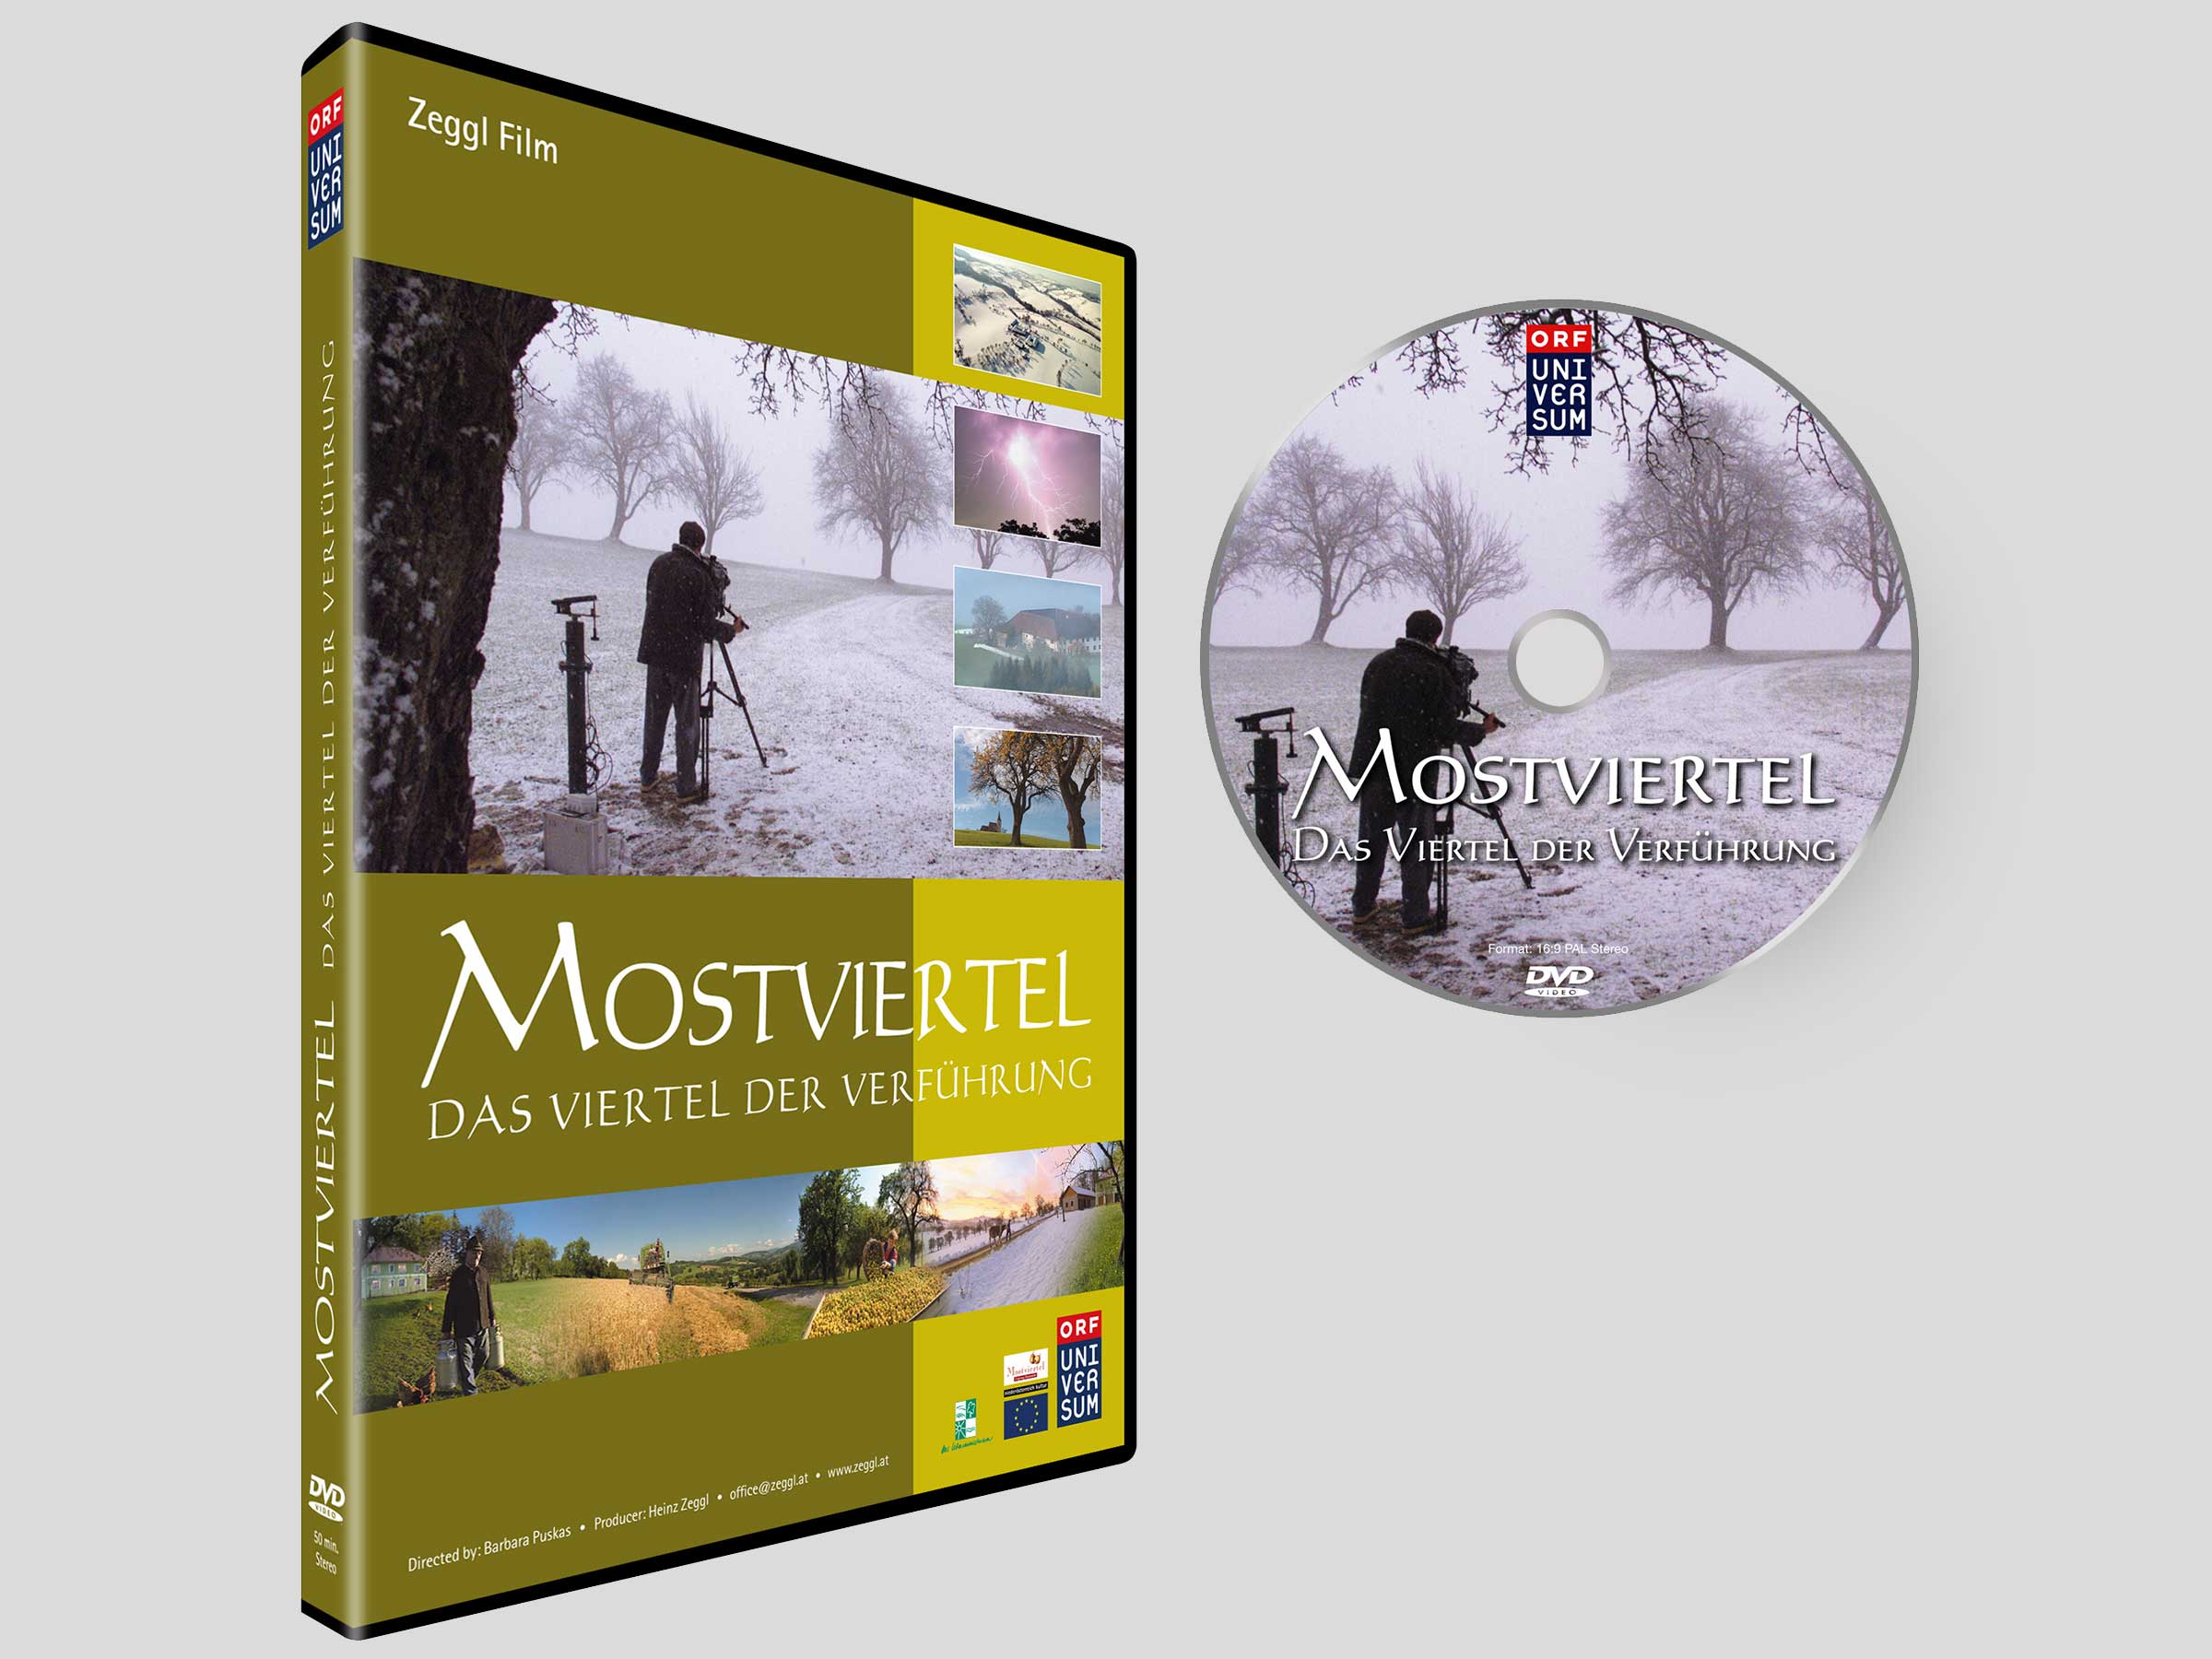 ORF-universum-most-viertel-zeggl-film-DVD